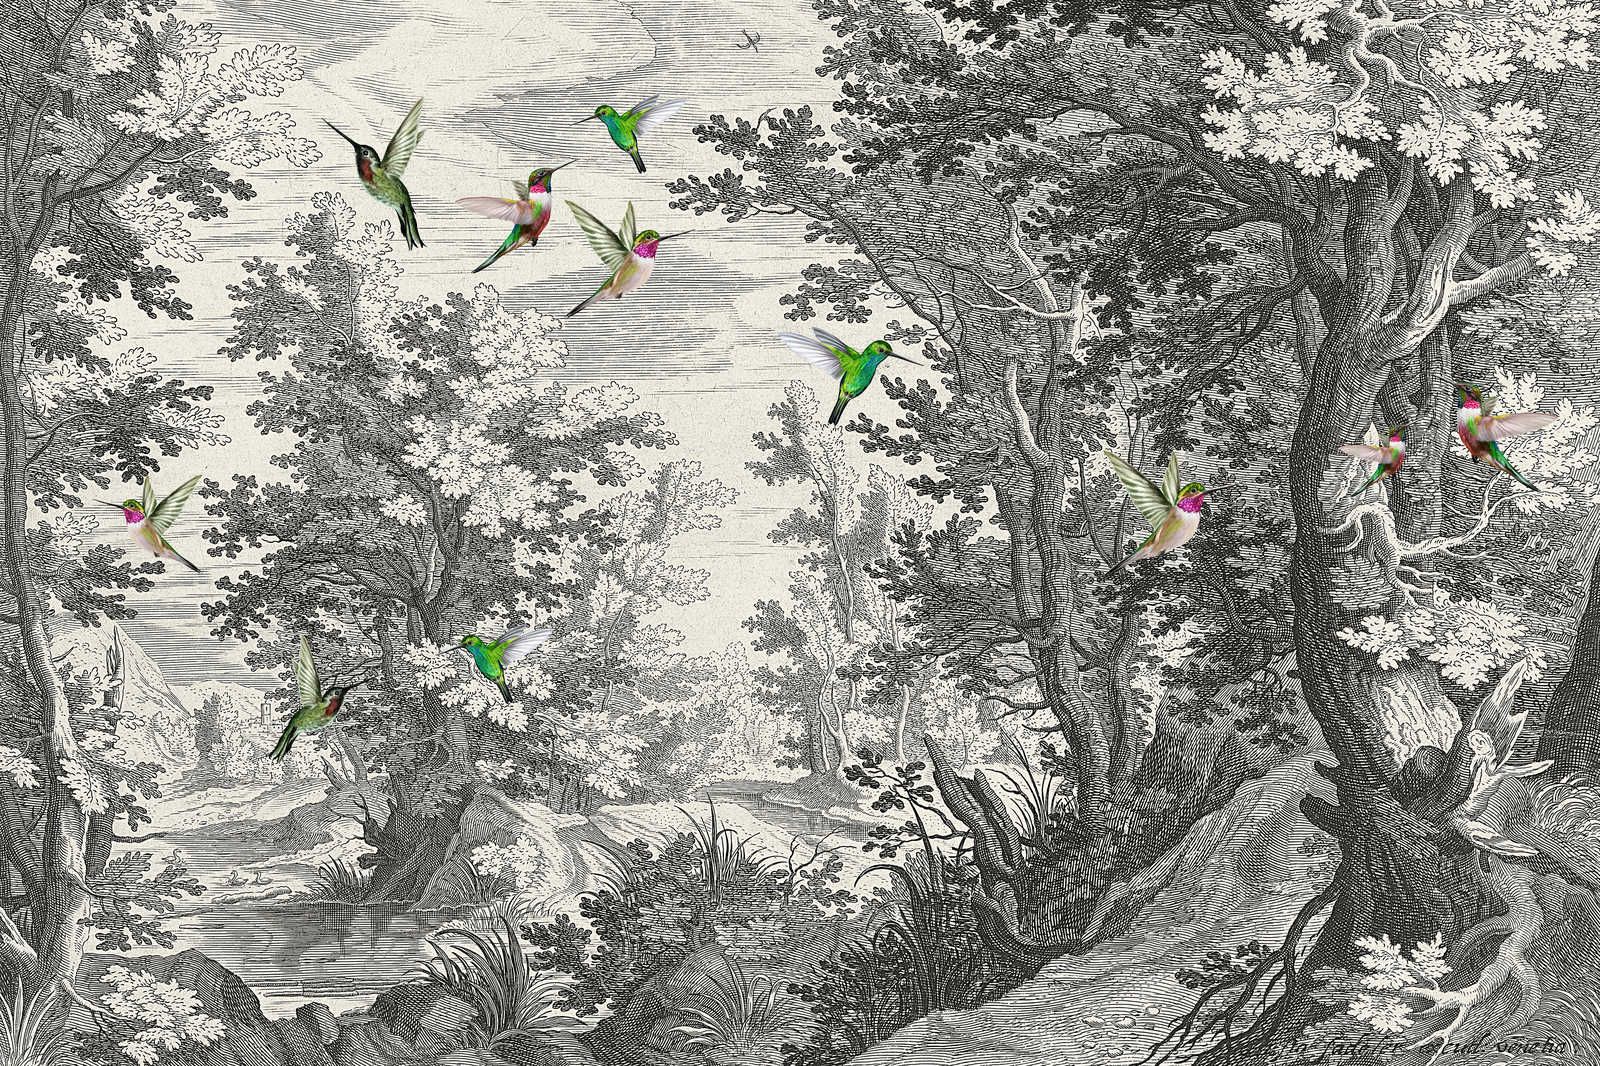             Fancy Forest 1 - Landschap canvas print met vogels - 0.90 m x 0.60 m
        